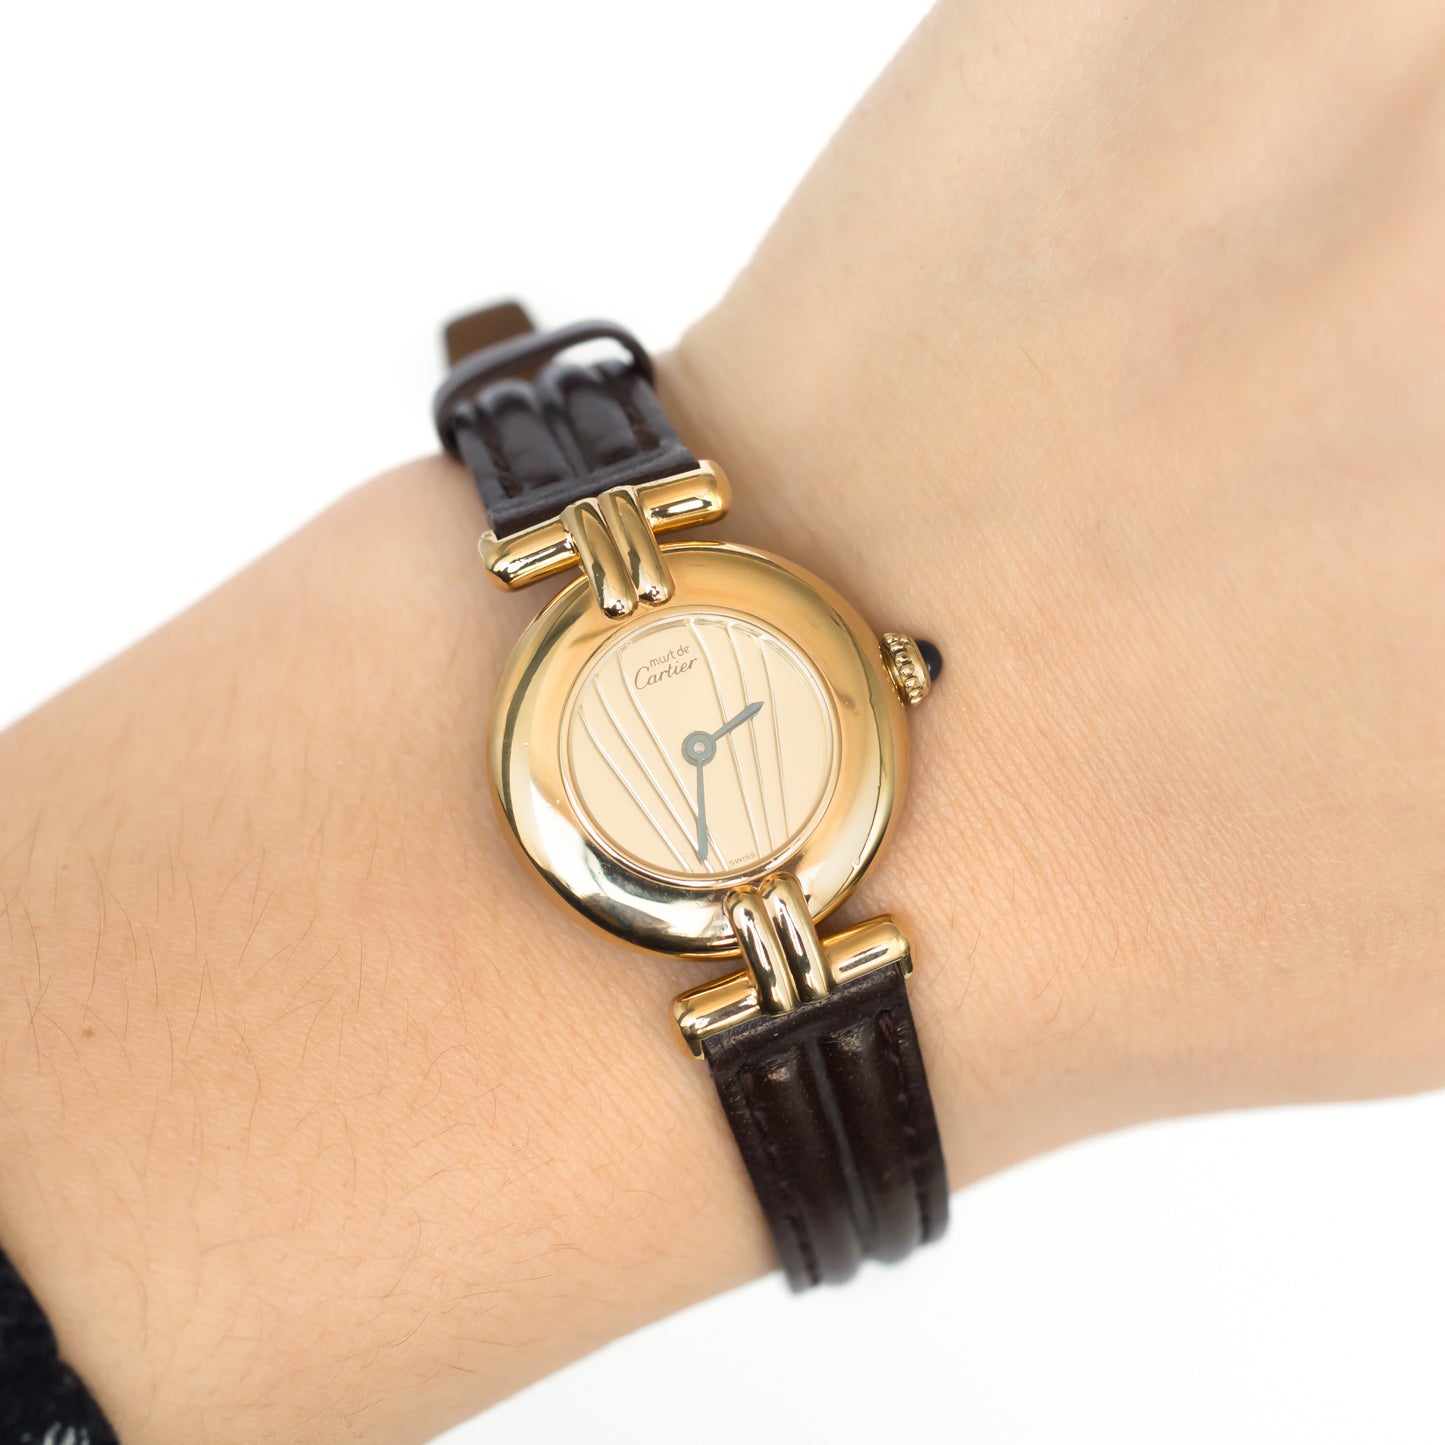 Cartier Vermeil Watch